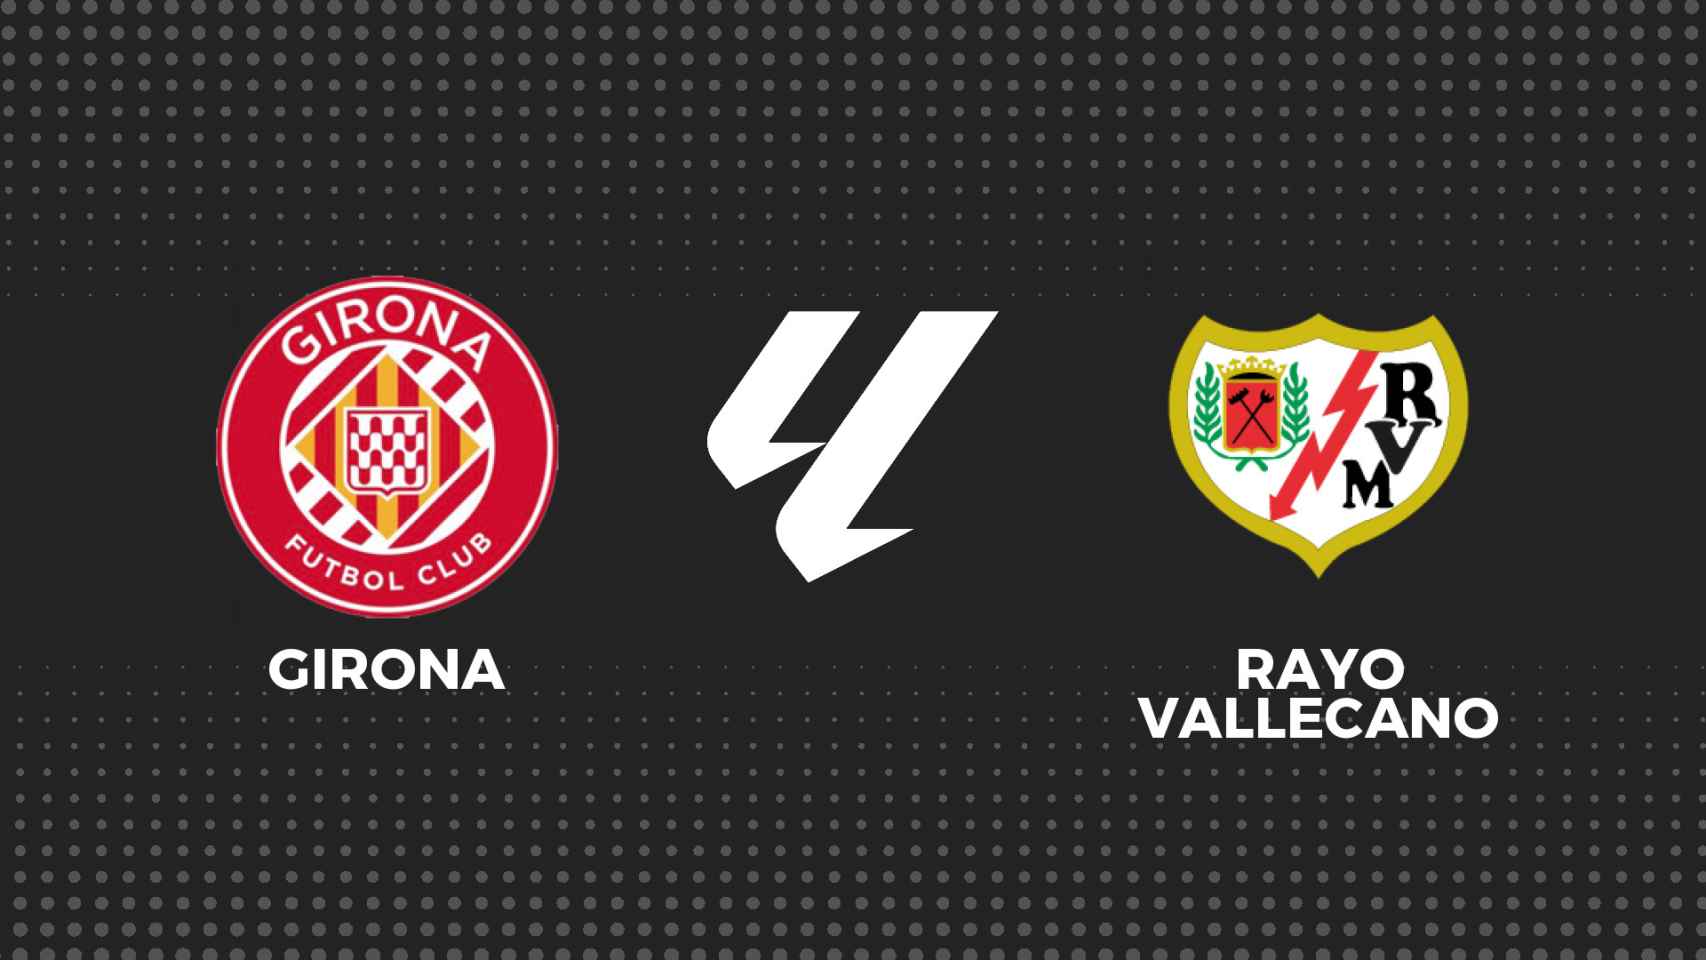 Girona - Rayo, La Liga en directo: resultado y goles del partido en vivo